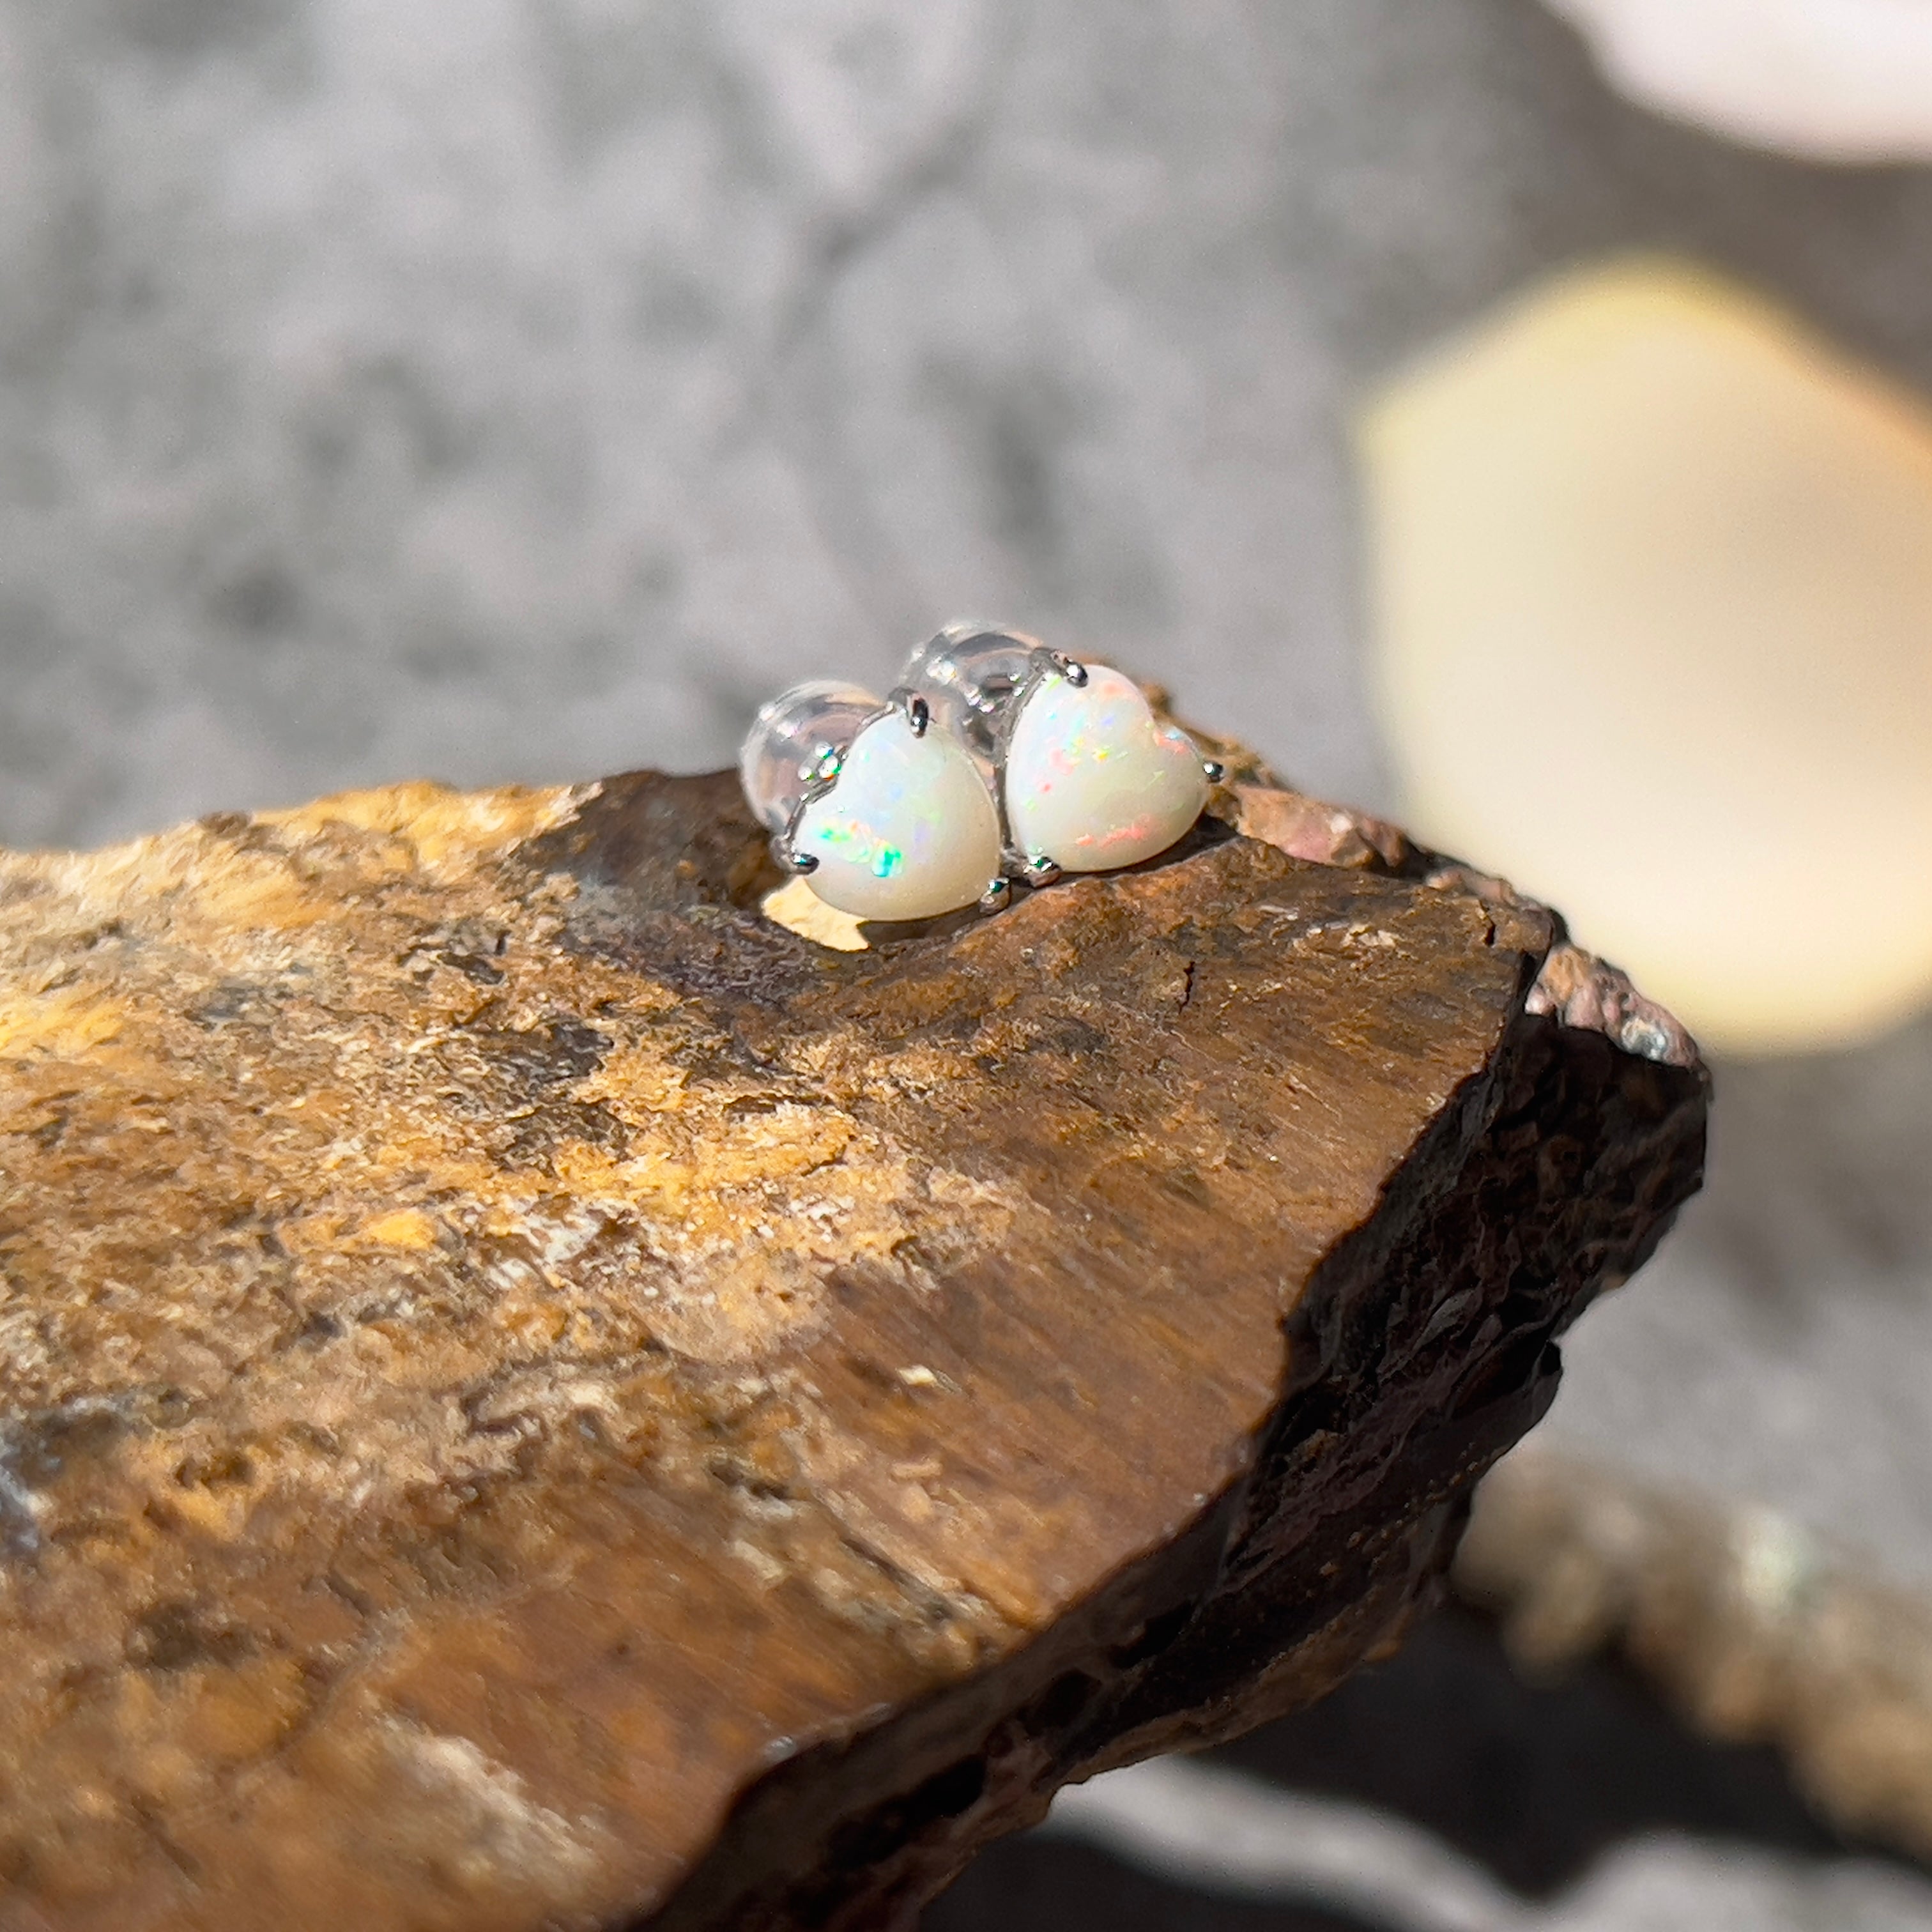 9KT White Gold Opal Stud Earrings, 6mm Heart Shape, Handmade Gift for Her, Minimalist & Dainty Gold Earrings, Cute Opal Jewelry, Birthstone Earrings - Masterpiece Jewellery Opal & Gems Sydney Australia | Online Shop